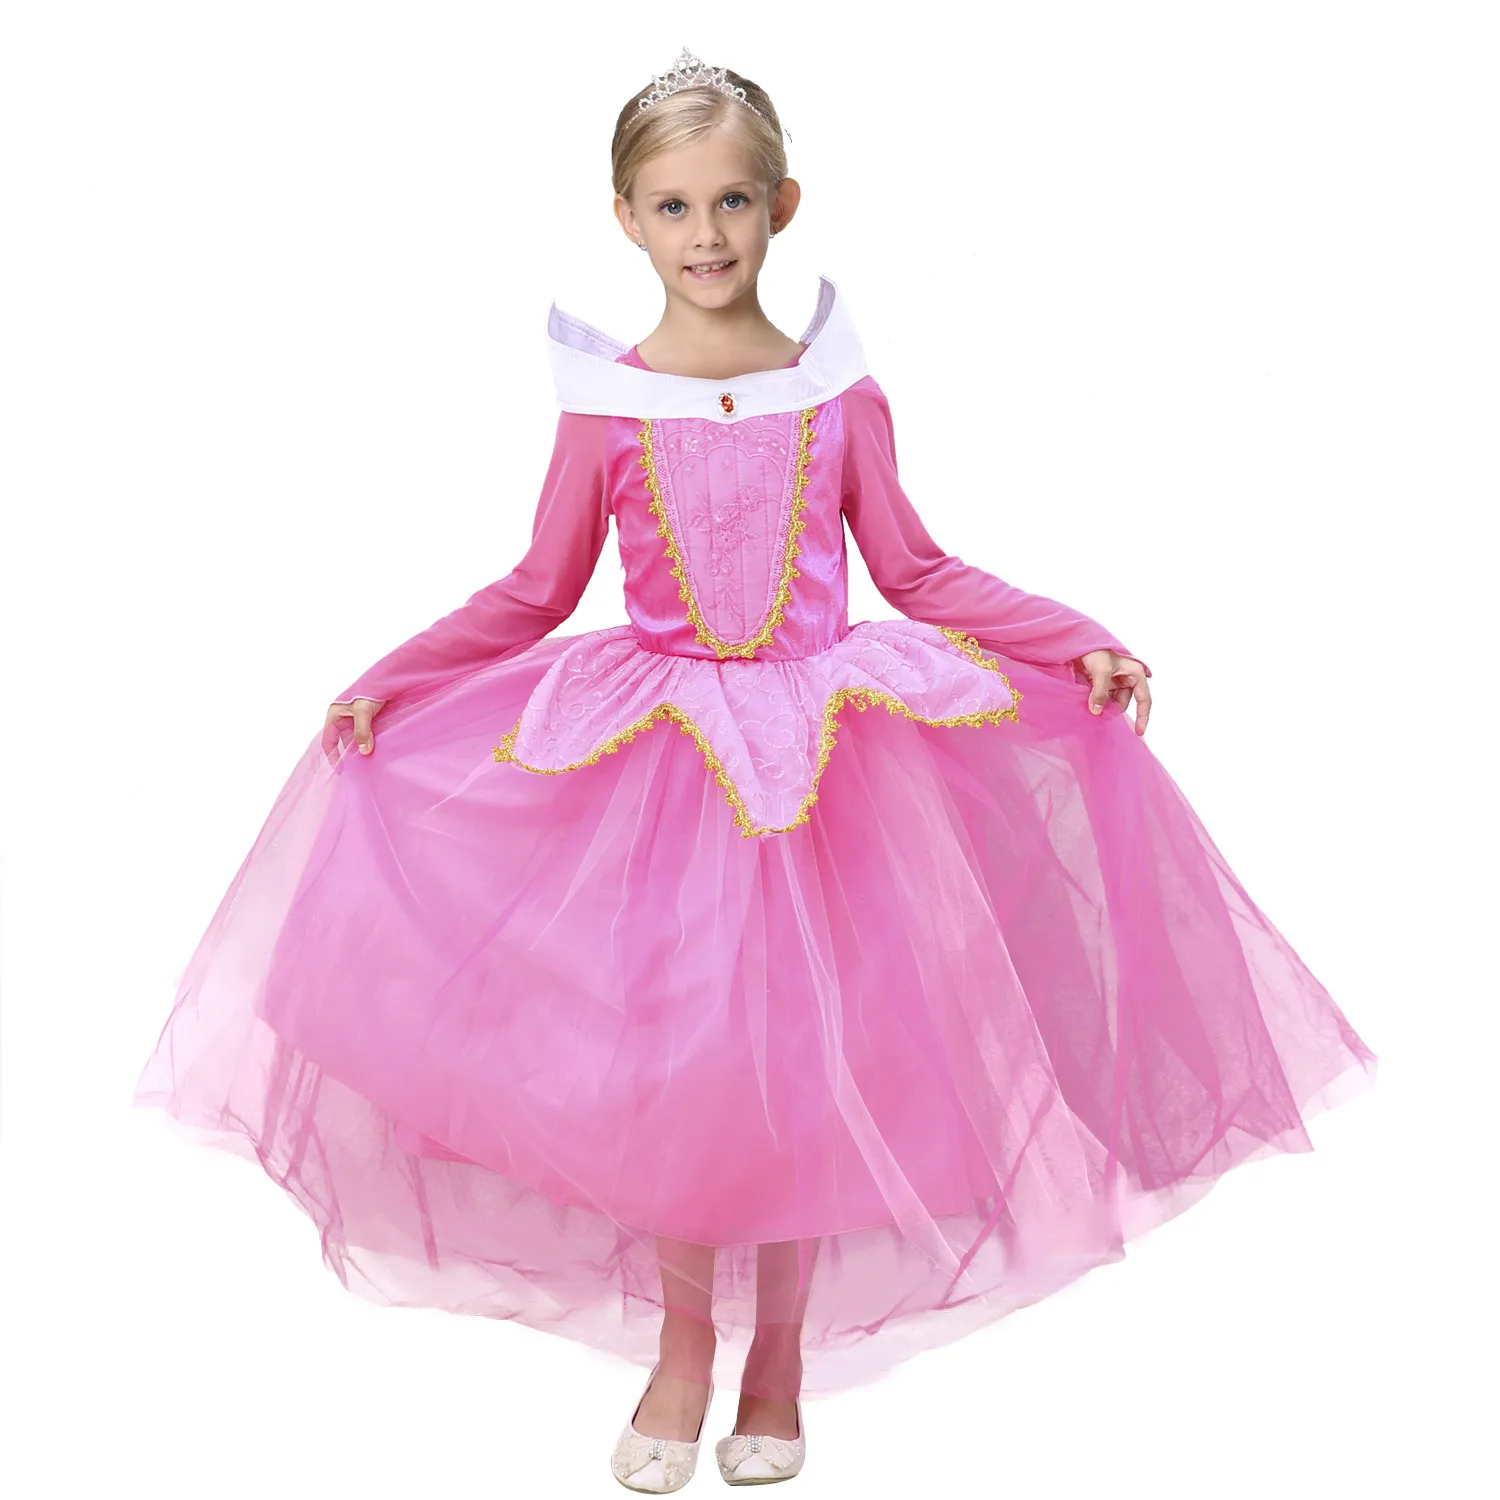 Princess Pink Girls Pageant платья маленькая для девочек платья вечеринка на день рождения 2019 малыш дети детское платье блеск цветок девушка платье для свадьбы